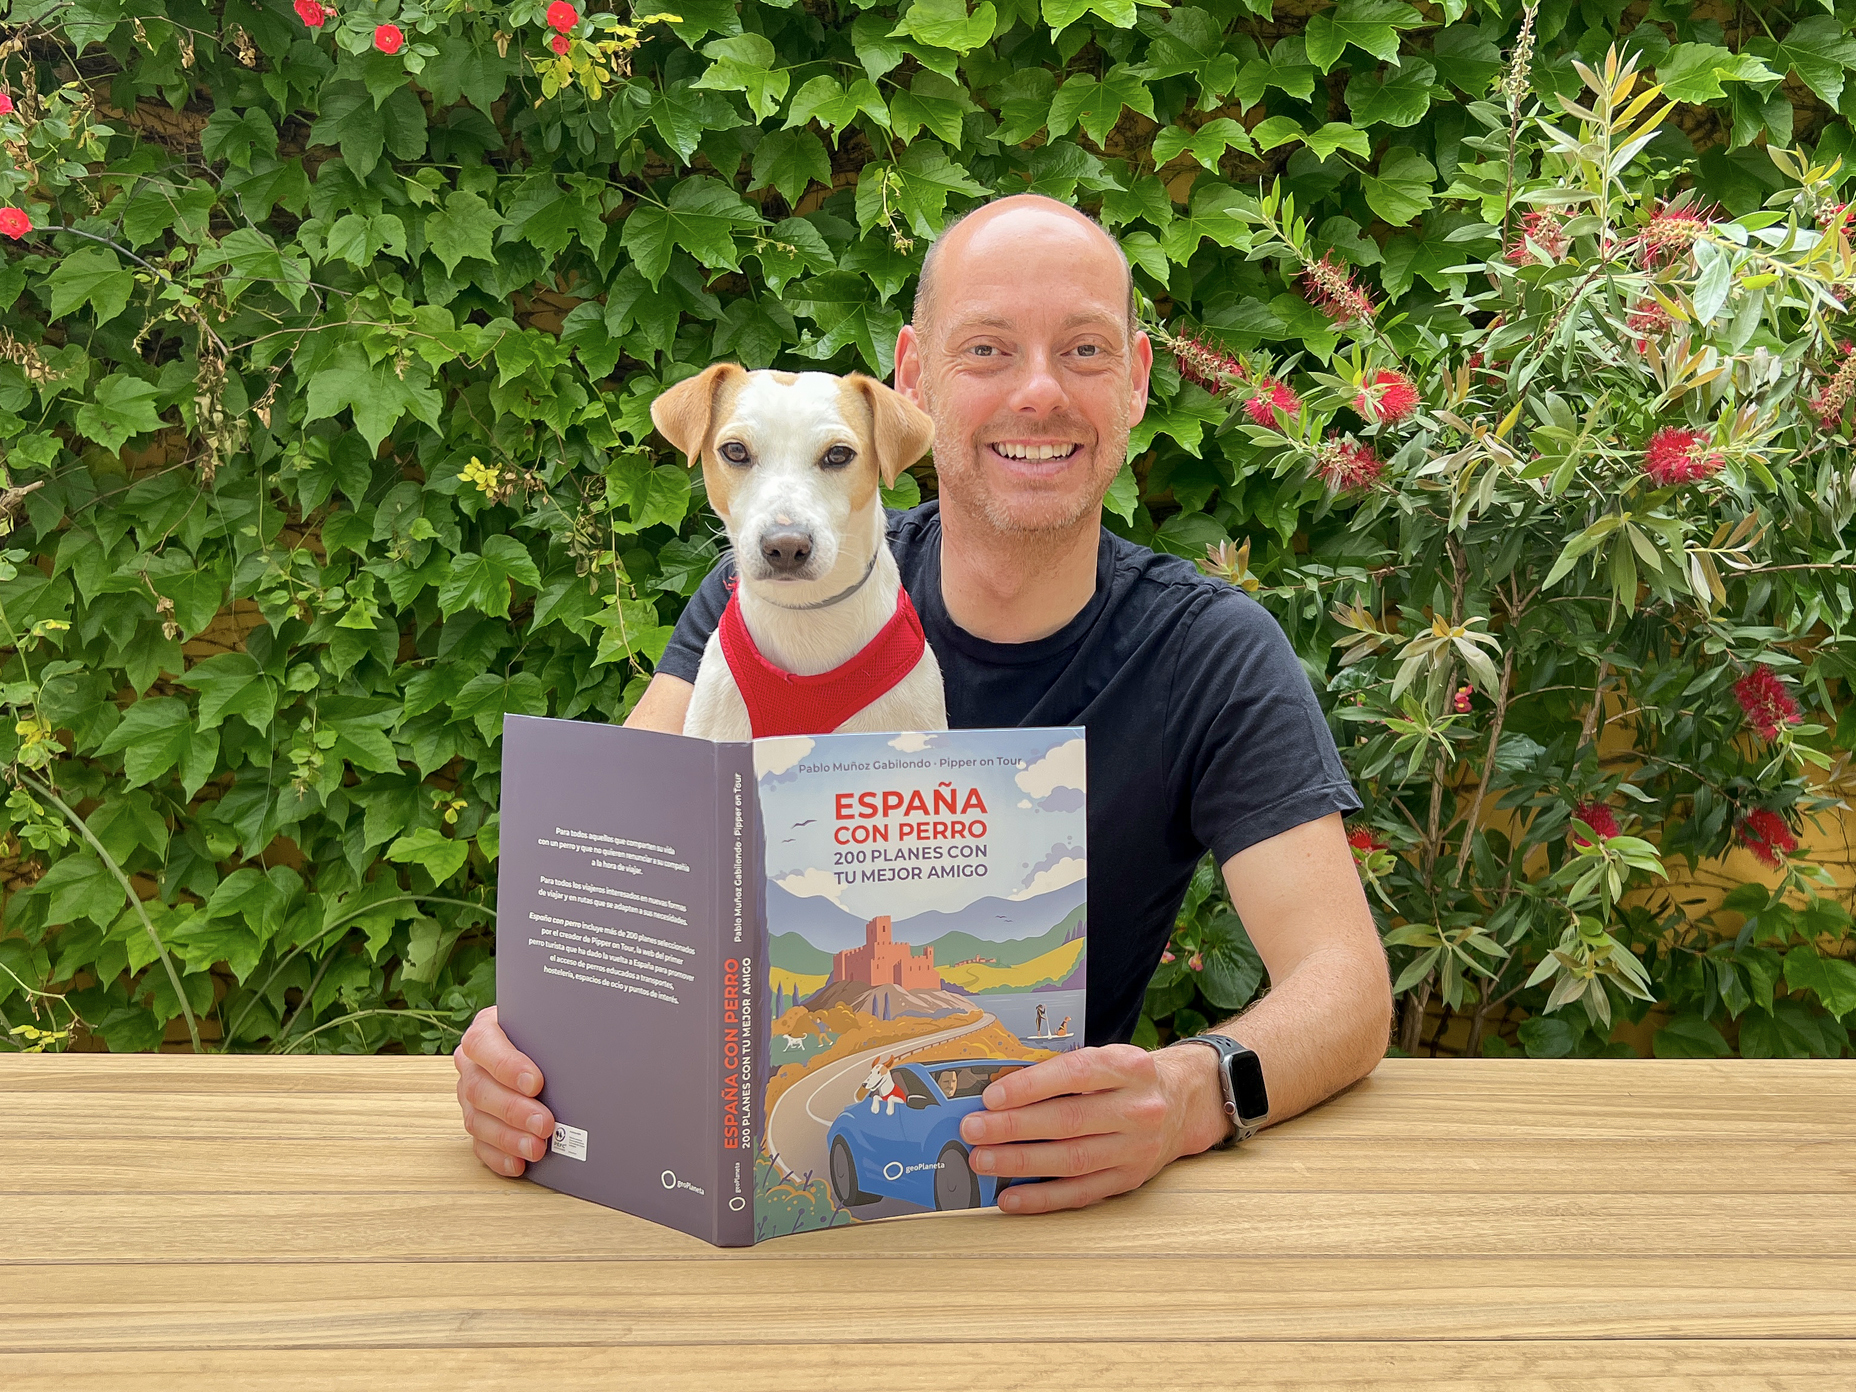 Leer mensaje completo: Pipper, el perro influencer, lanza su nuevo libro ‘España con perro’